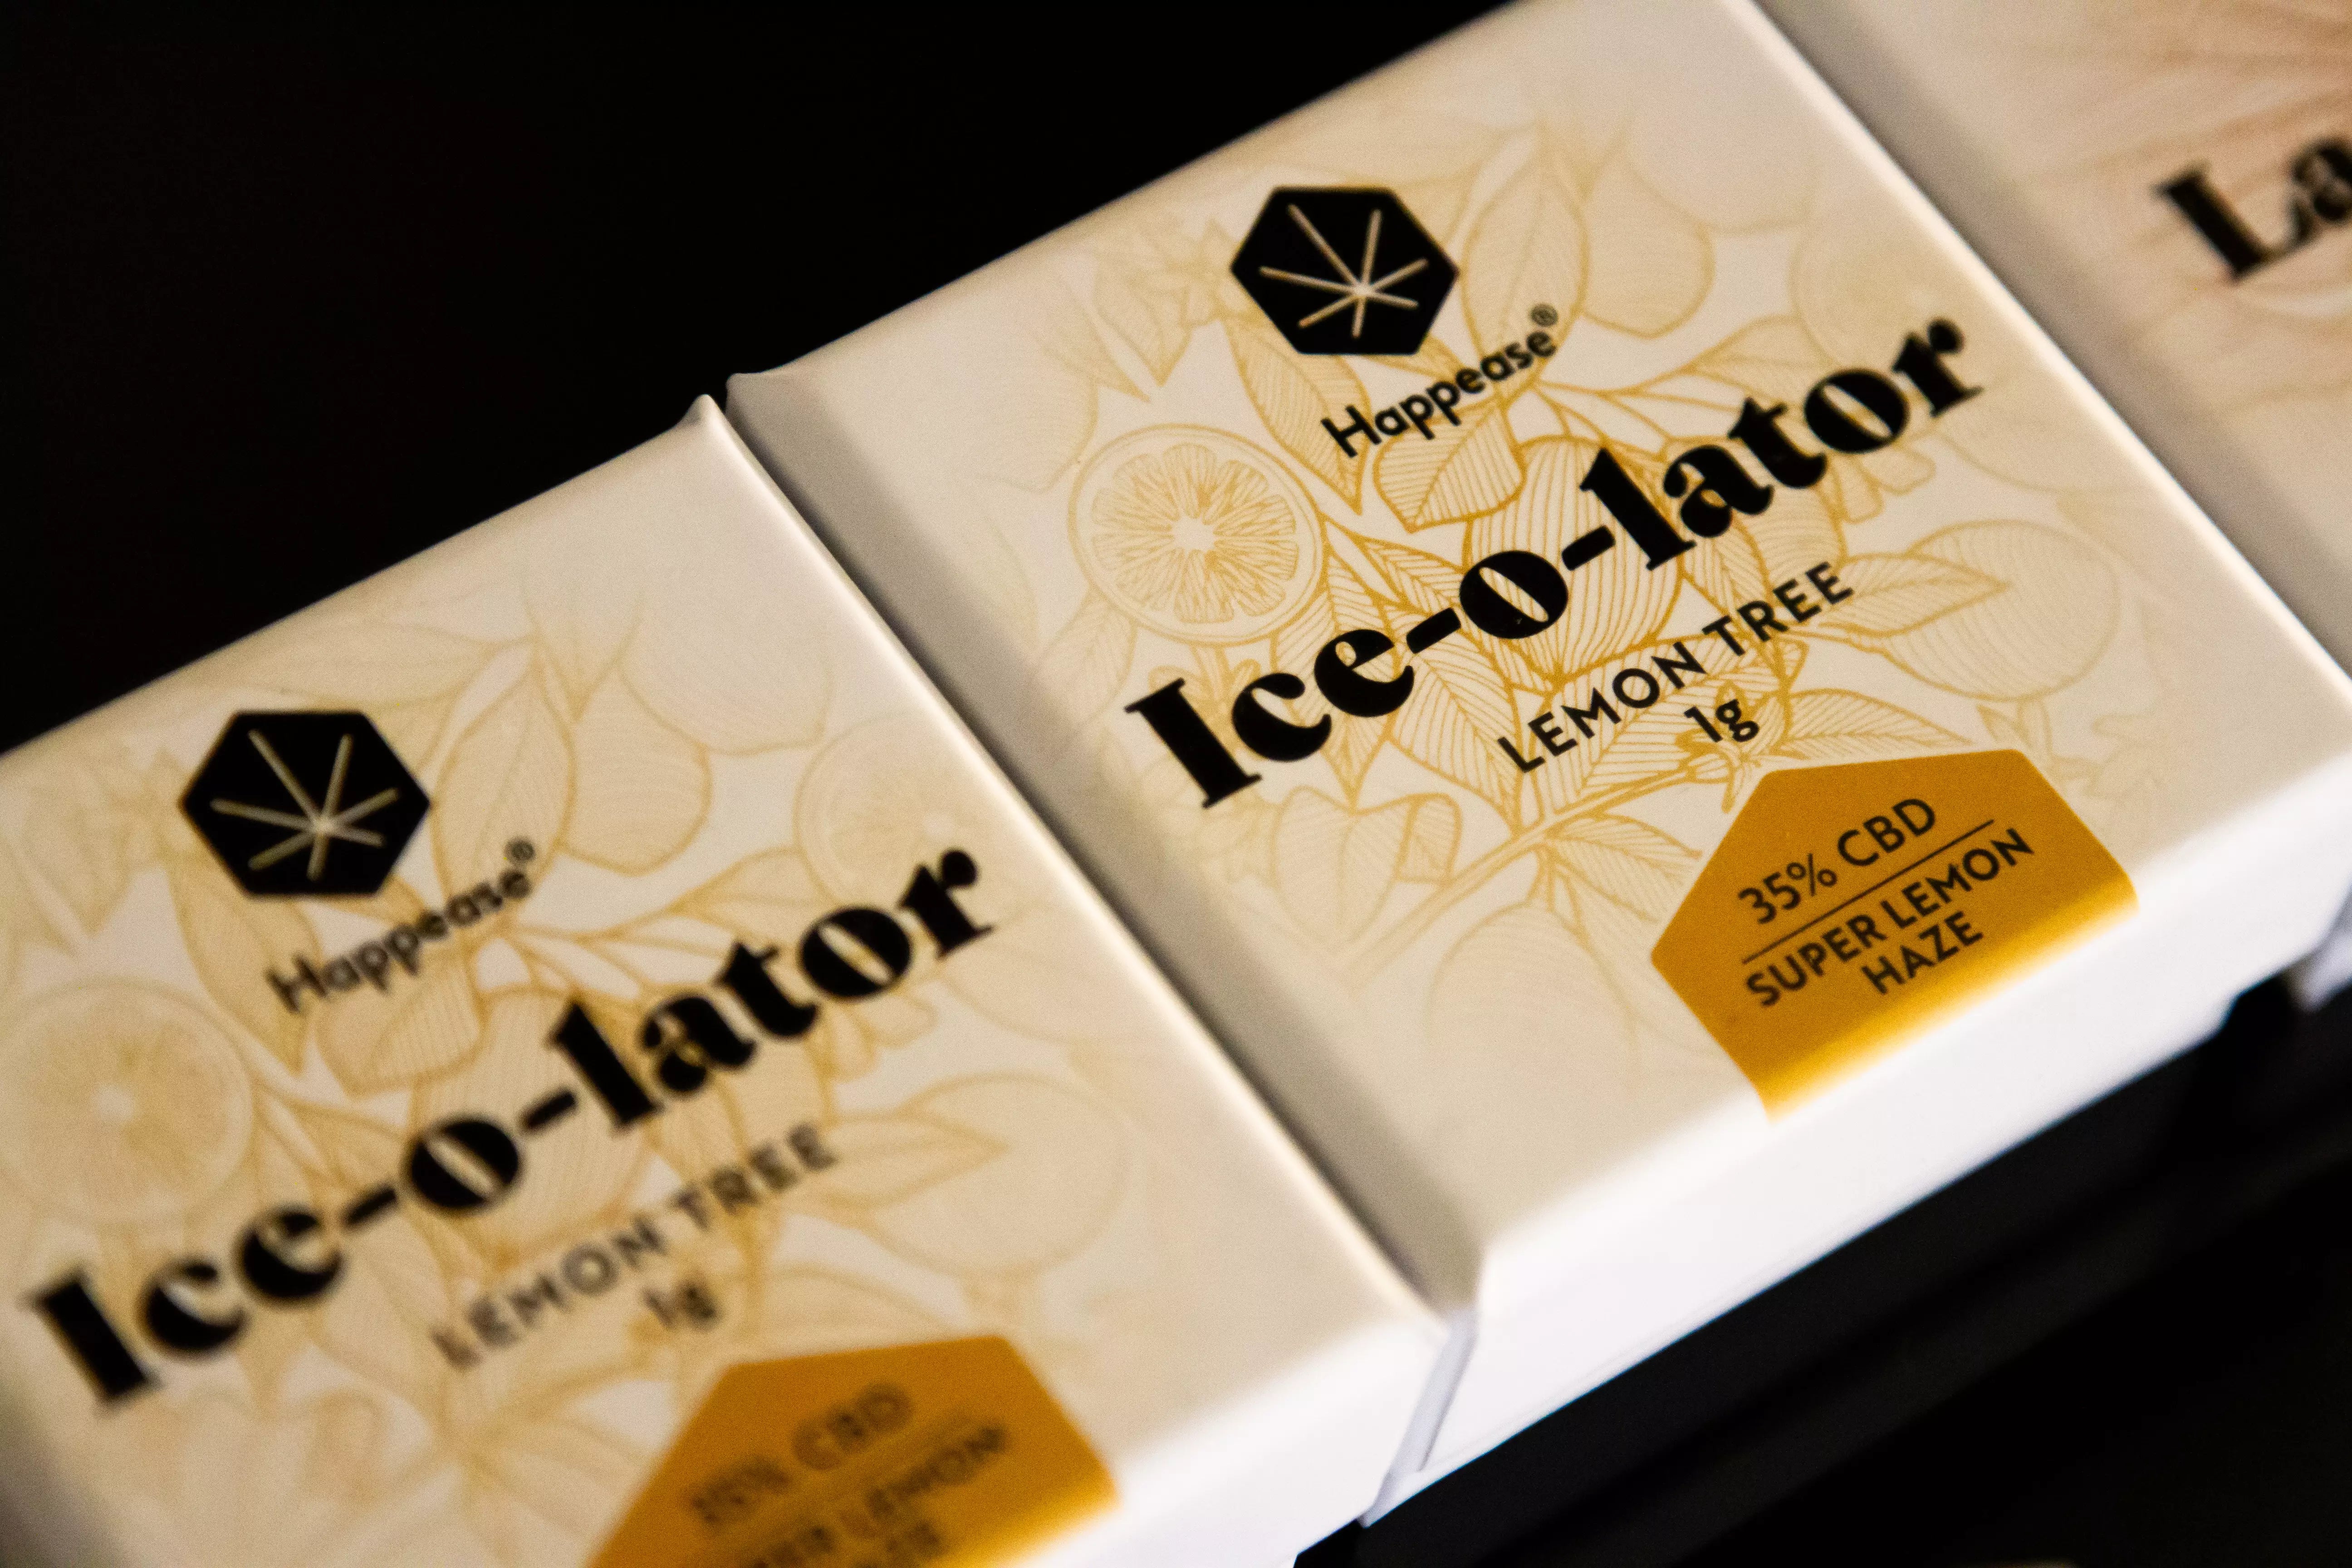 ICE O LATOR - Lemon Tree 35% CBD (1g)